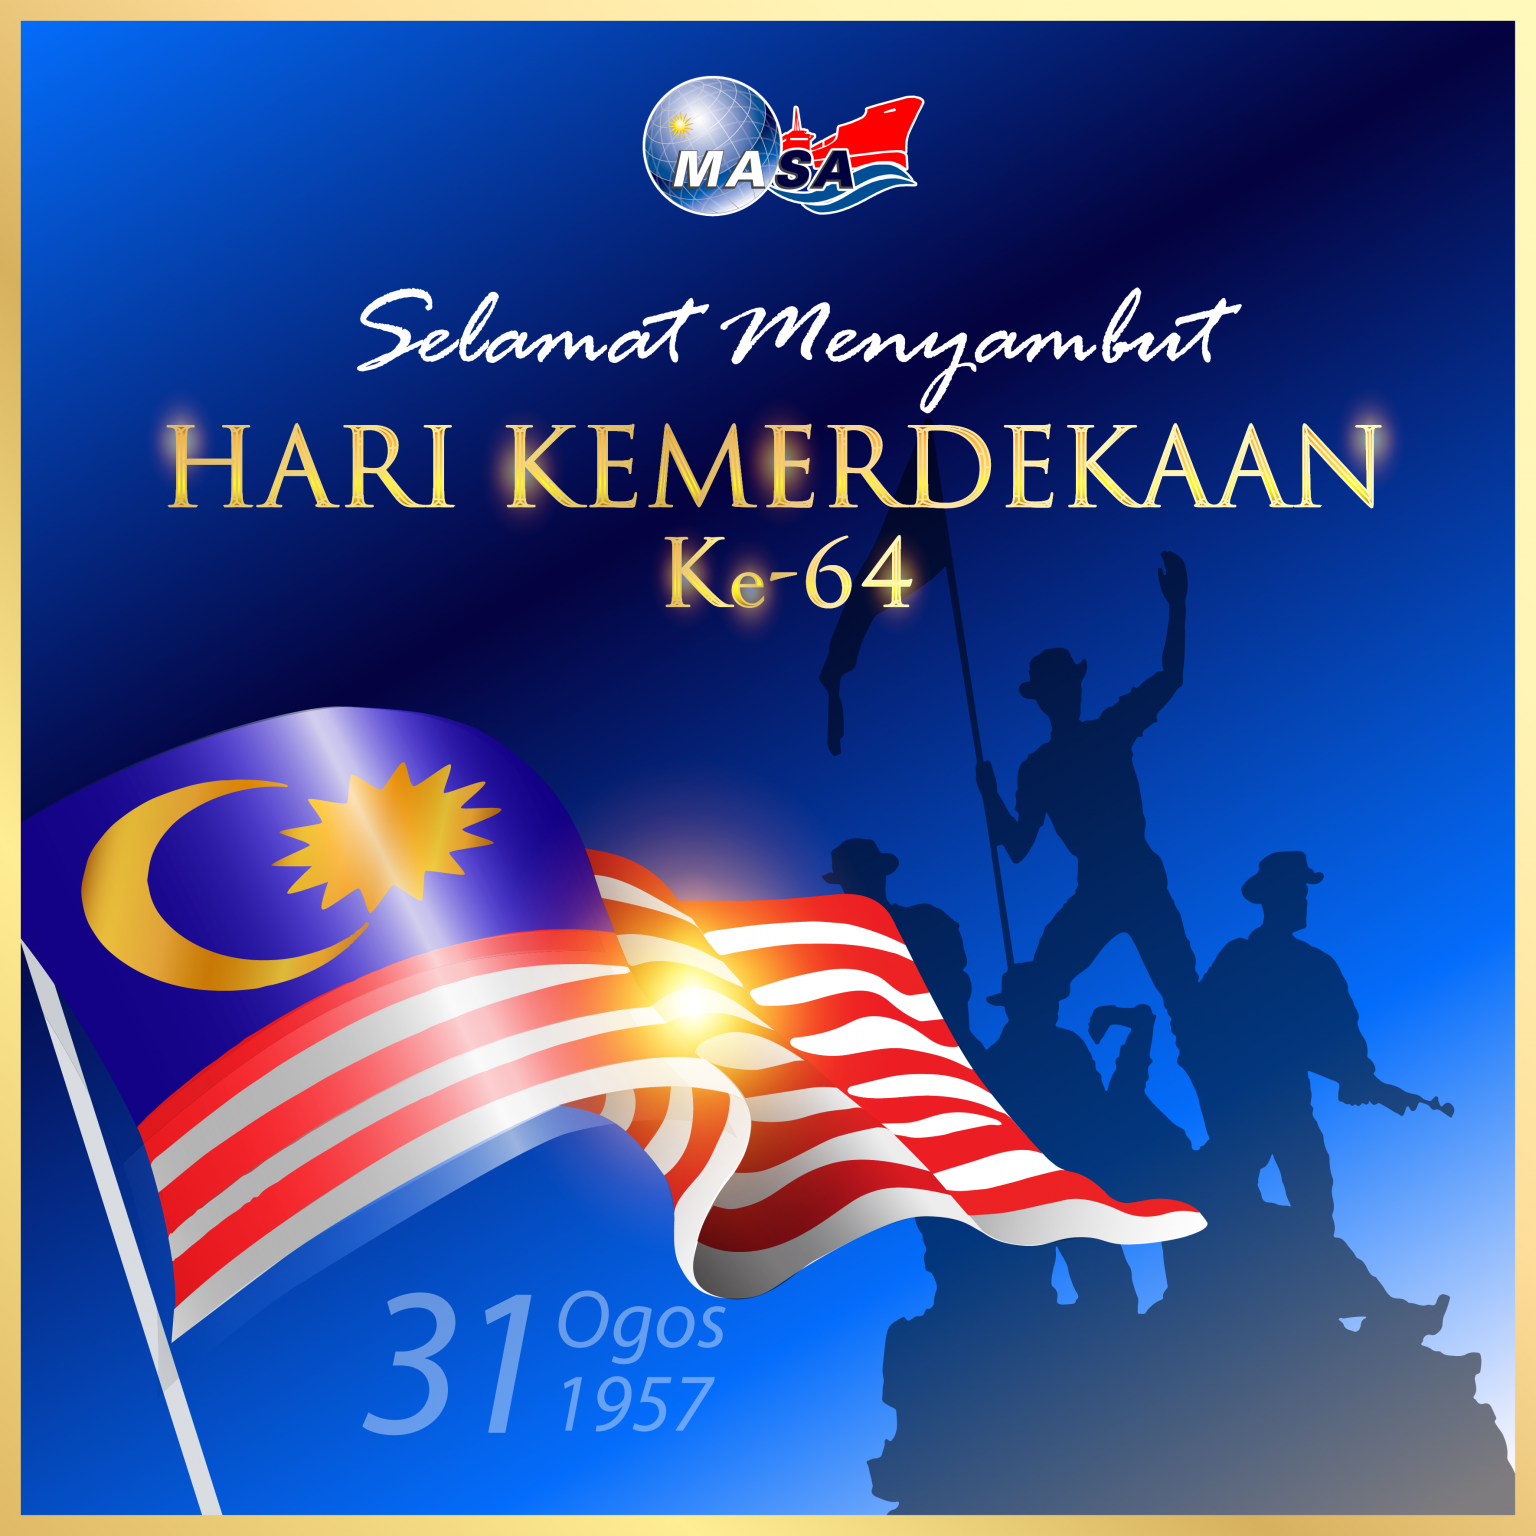 Selamat Menyambut Hari Kemerdekaan Masa Malaysia Shipowners Association 3738